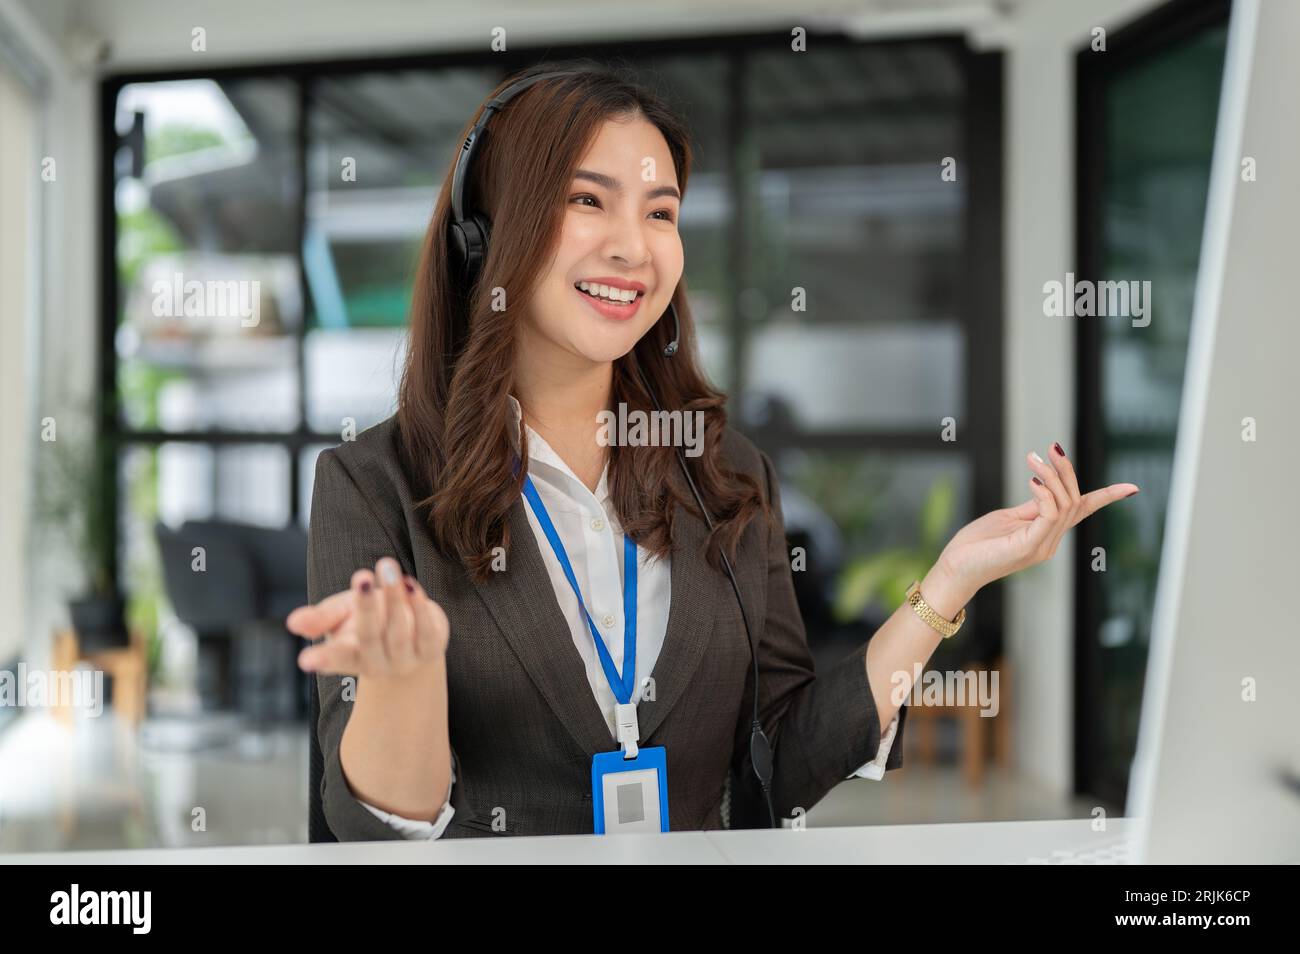 Un agent de centre d'appels ou un opérateur de télévendeur asiatique attrayant et joyeux avec un micro-casque sans fil offre une expérience client positive Banque D'Images